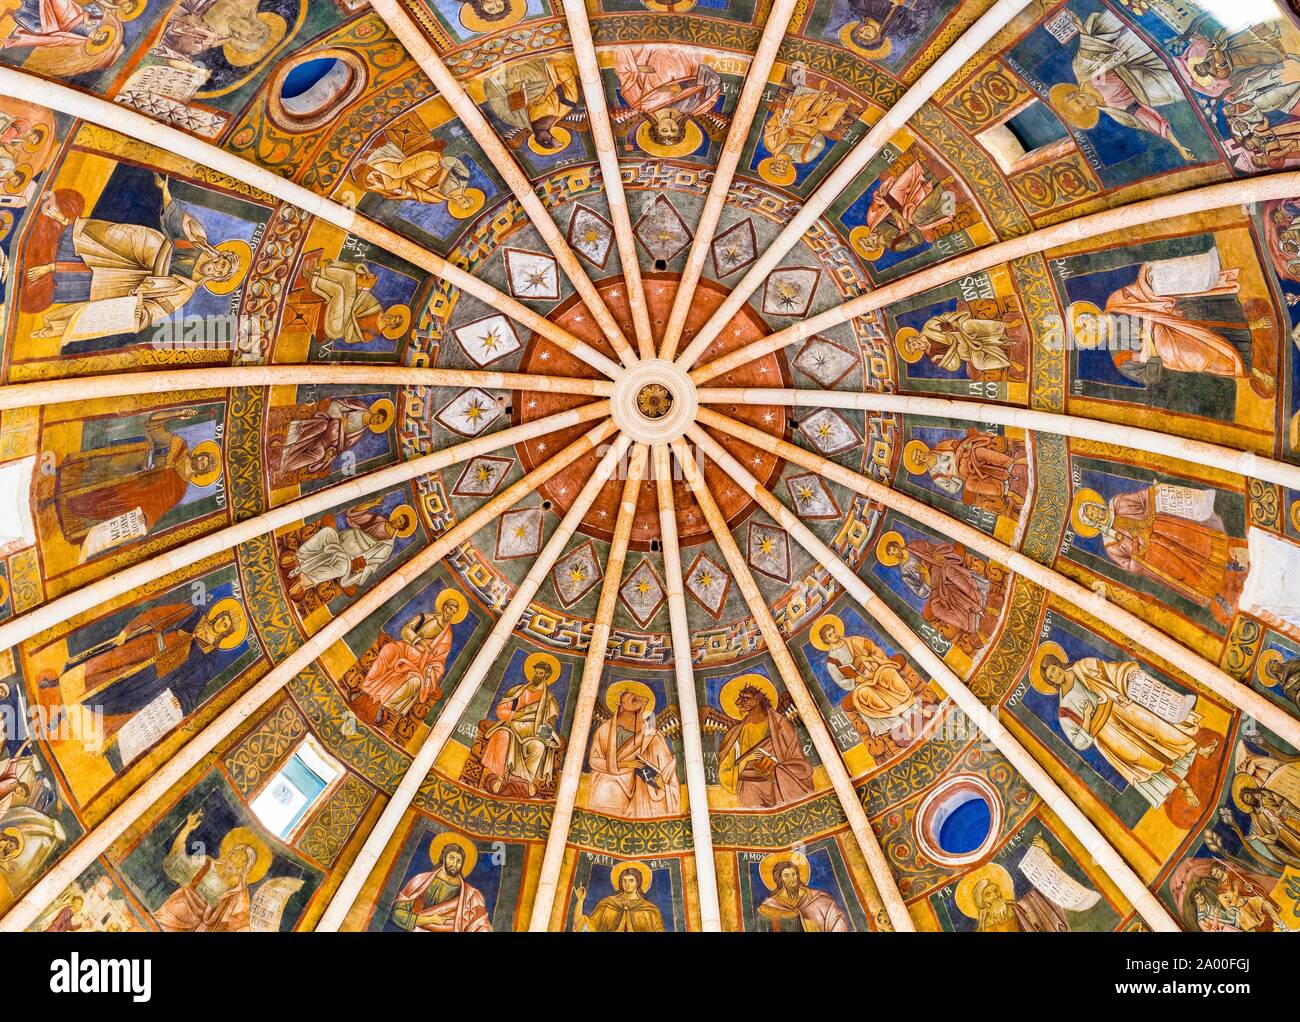 Dôme avec fresques romanes, baptistère, Parme, Emilie-Romagne, Italie Banque D'Images